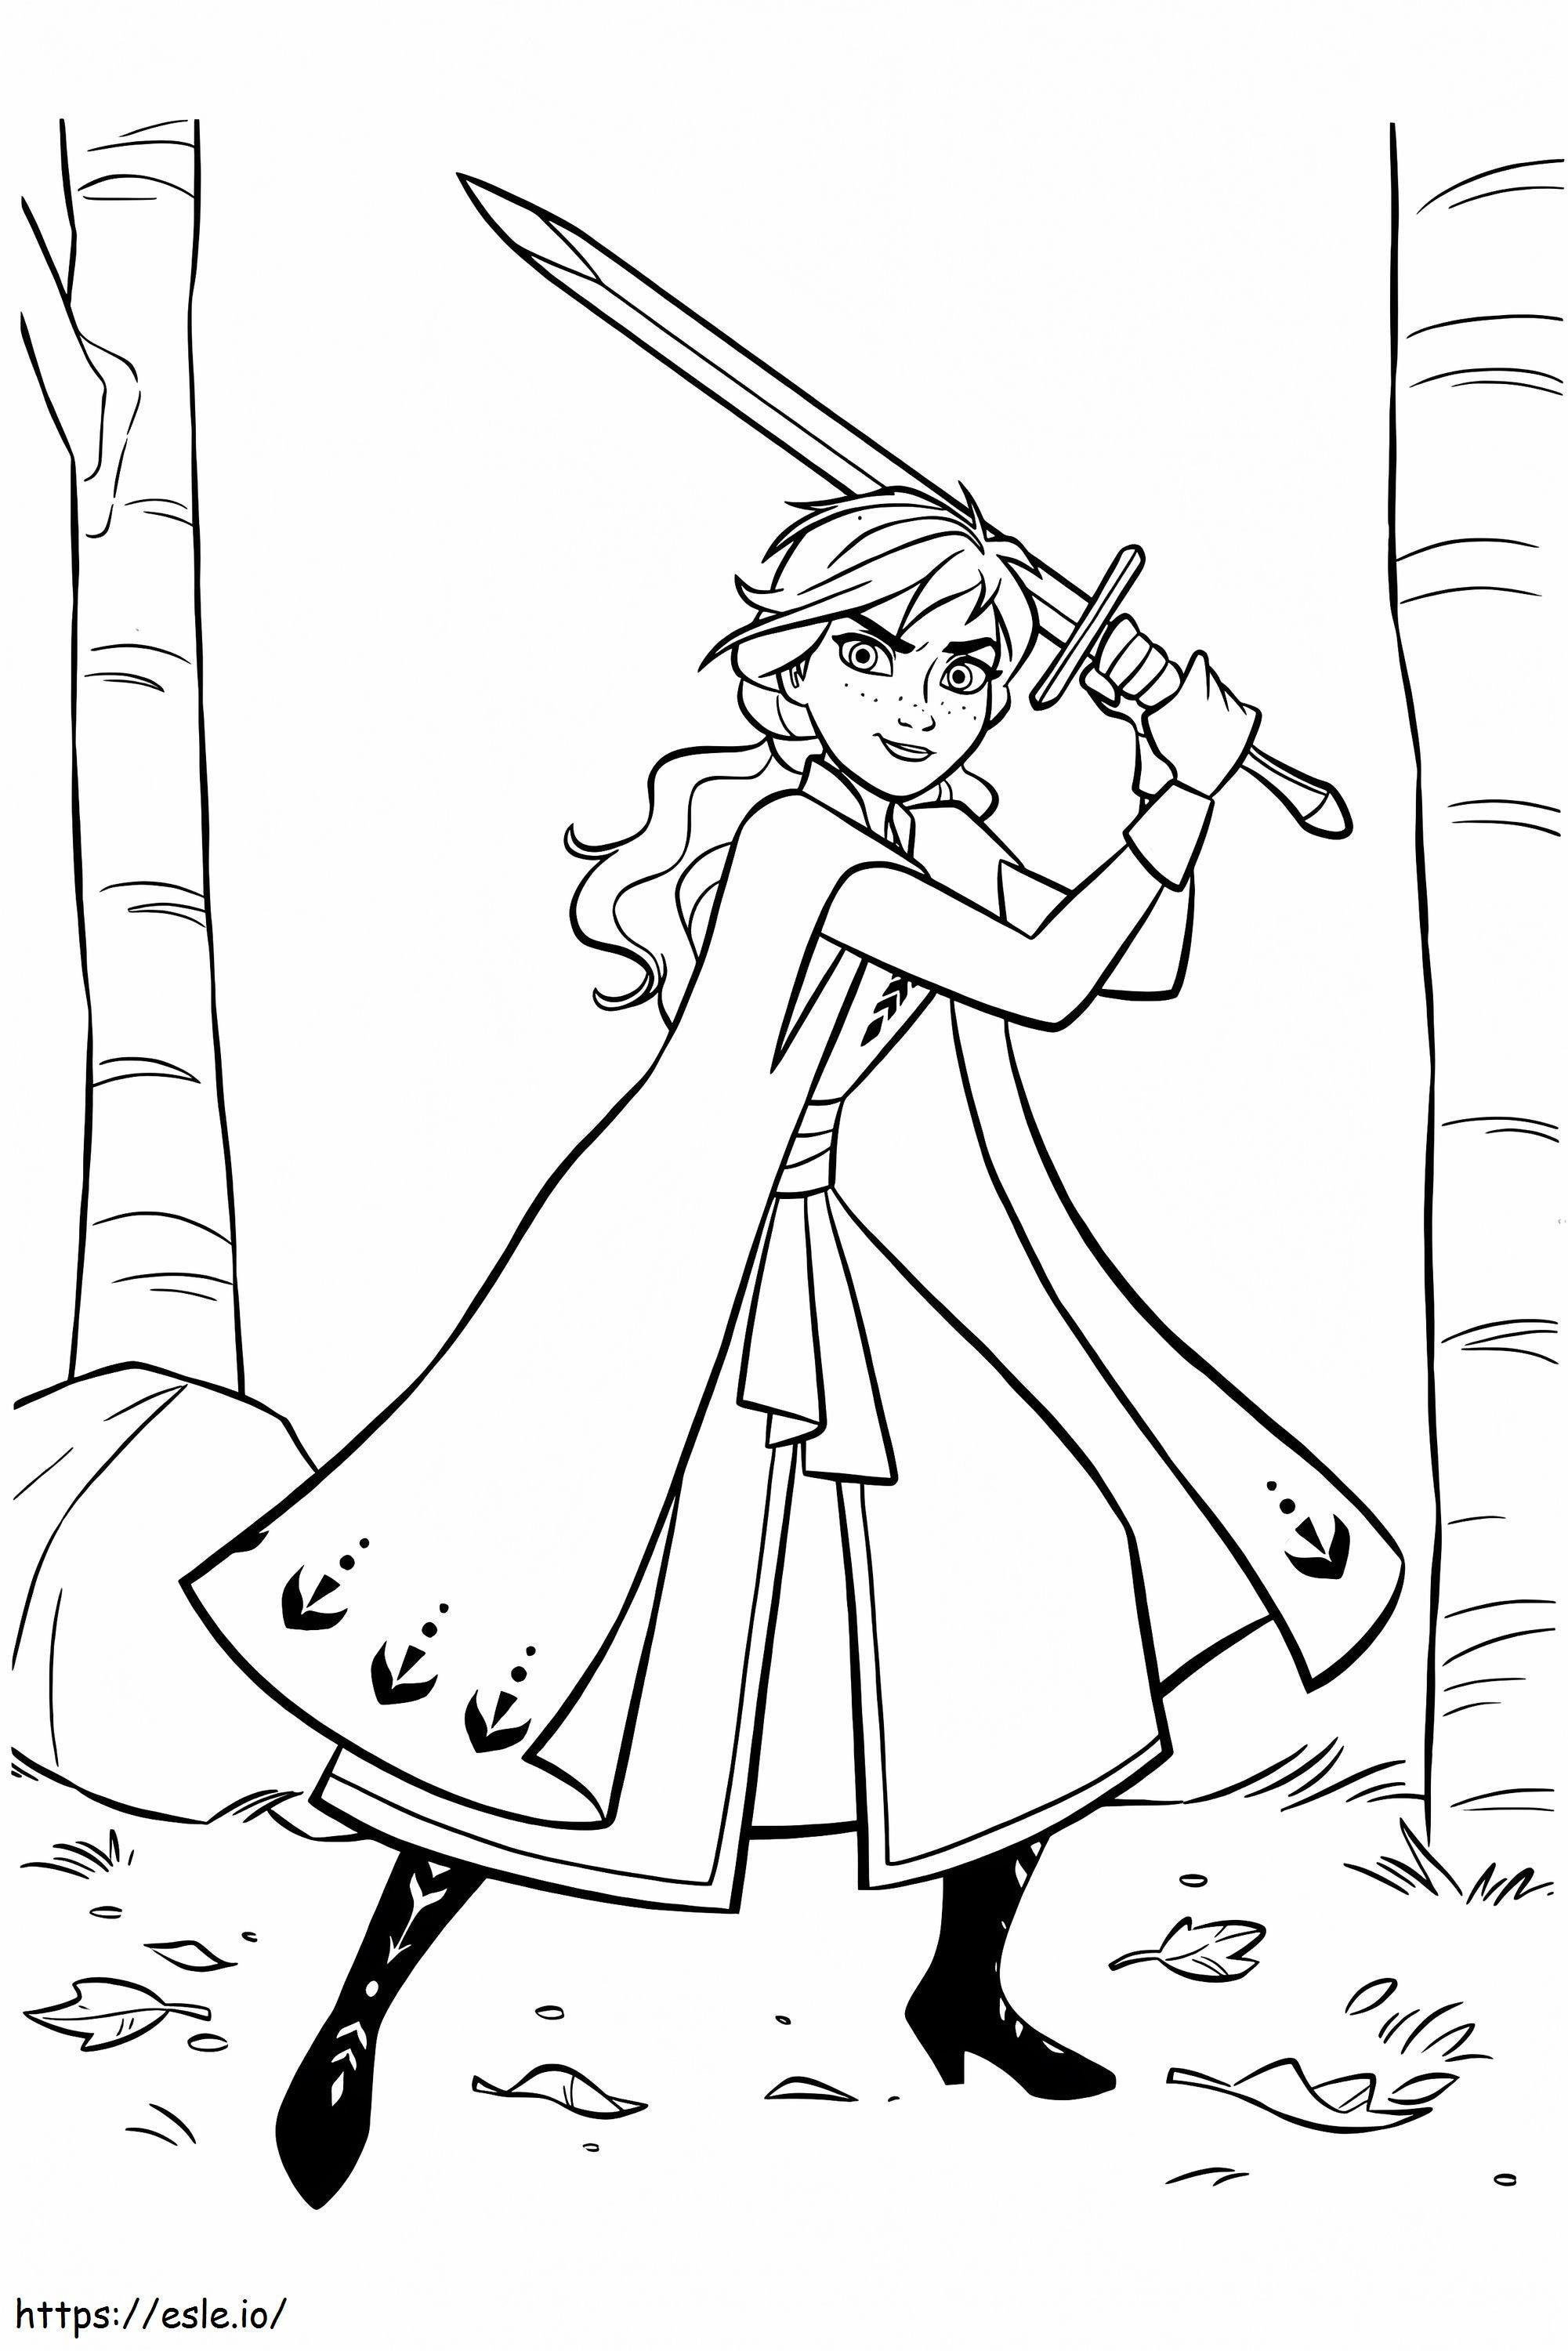 Coloriage Anna avec l'épée 683X1024 à imprimer dessin